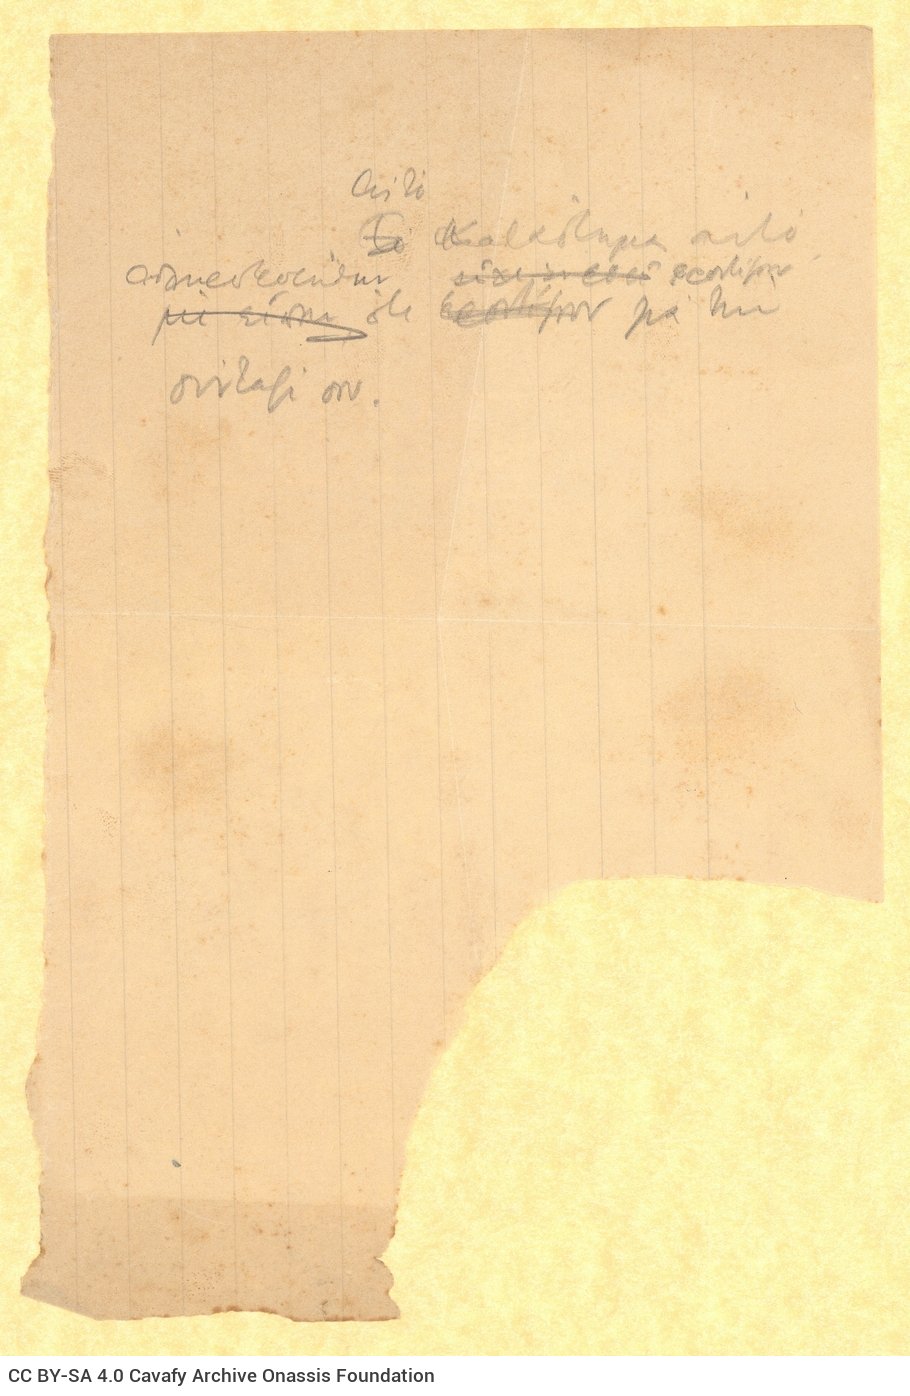 Χειρόγραφη σημείωση σε κομμάτι χαρτιού σχετική με τη σύνταξη του Πα�